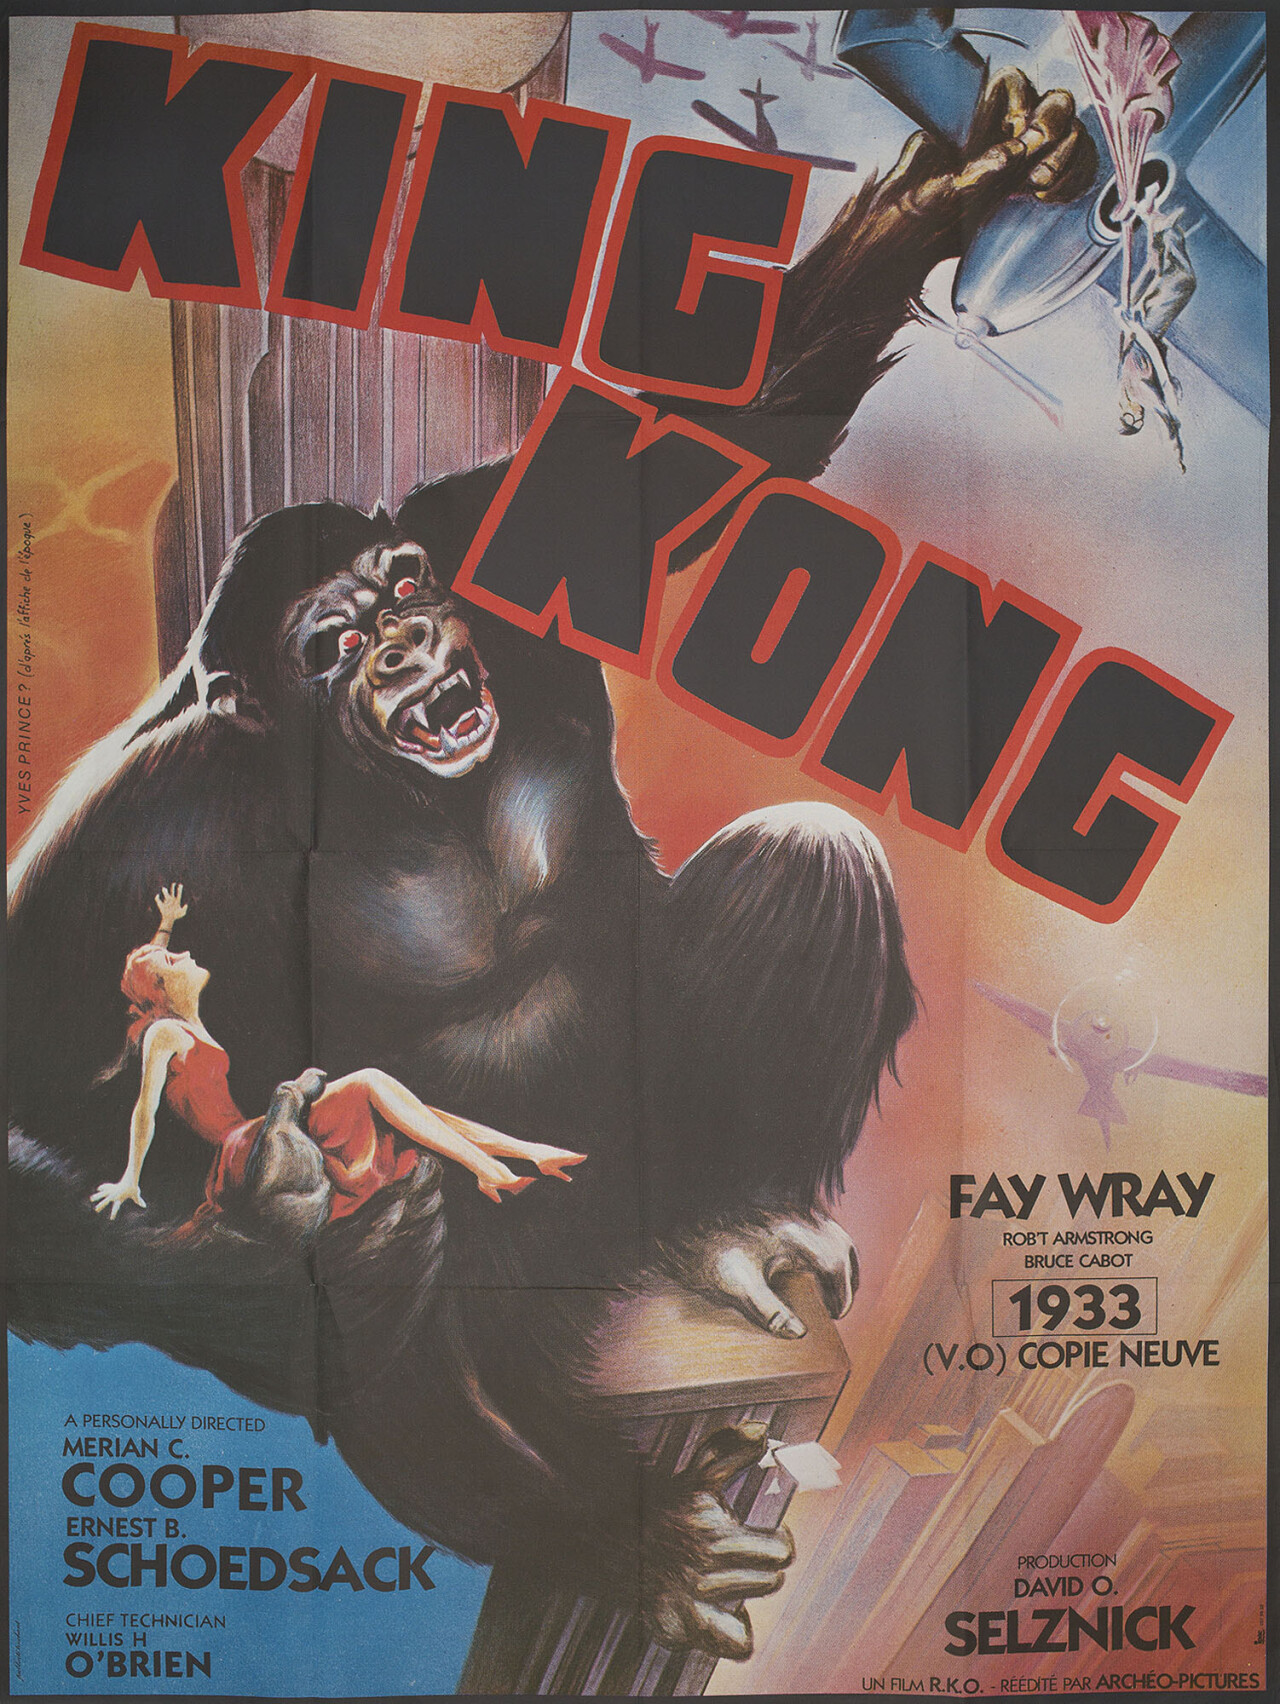 Кинг Конг (King Kong, 1933), режиссёр Мериан К. Купер, французский постер к фильму, автор Ив Принс (монстры, 1980 год)